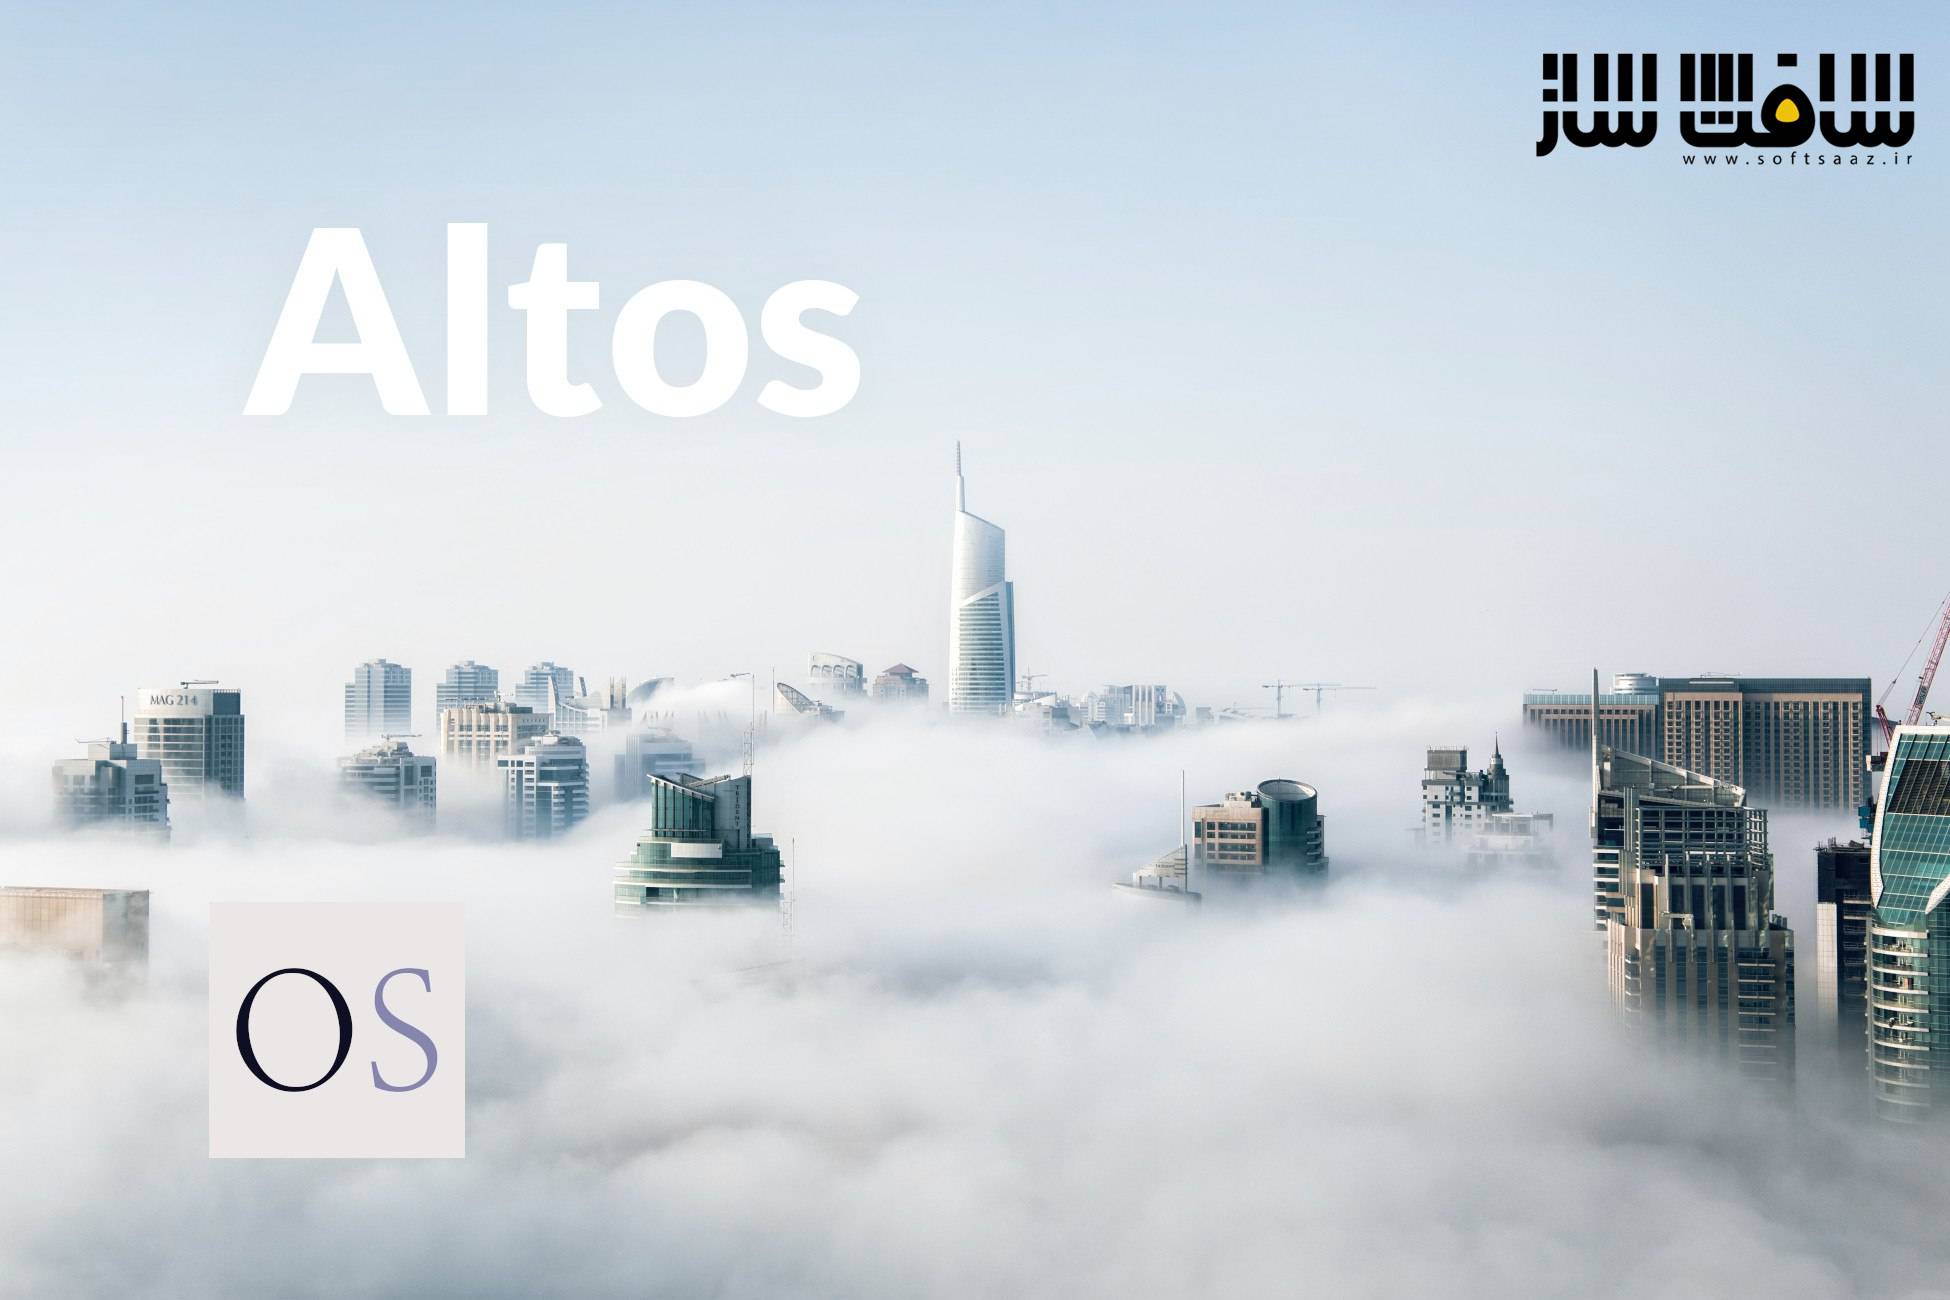 دانلود پروژه Altos برای یونیتی